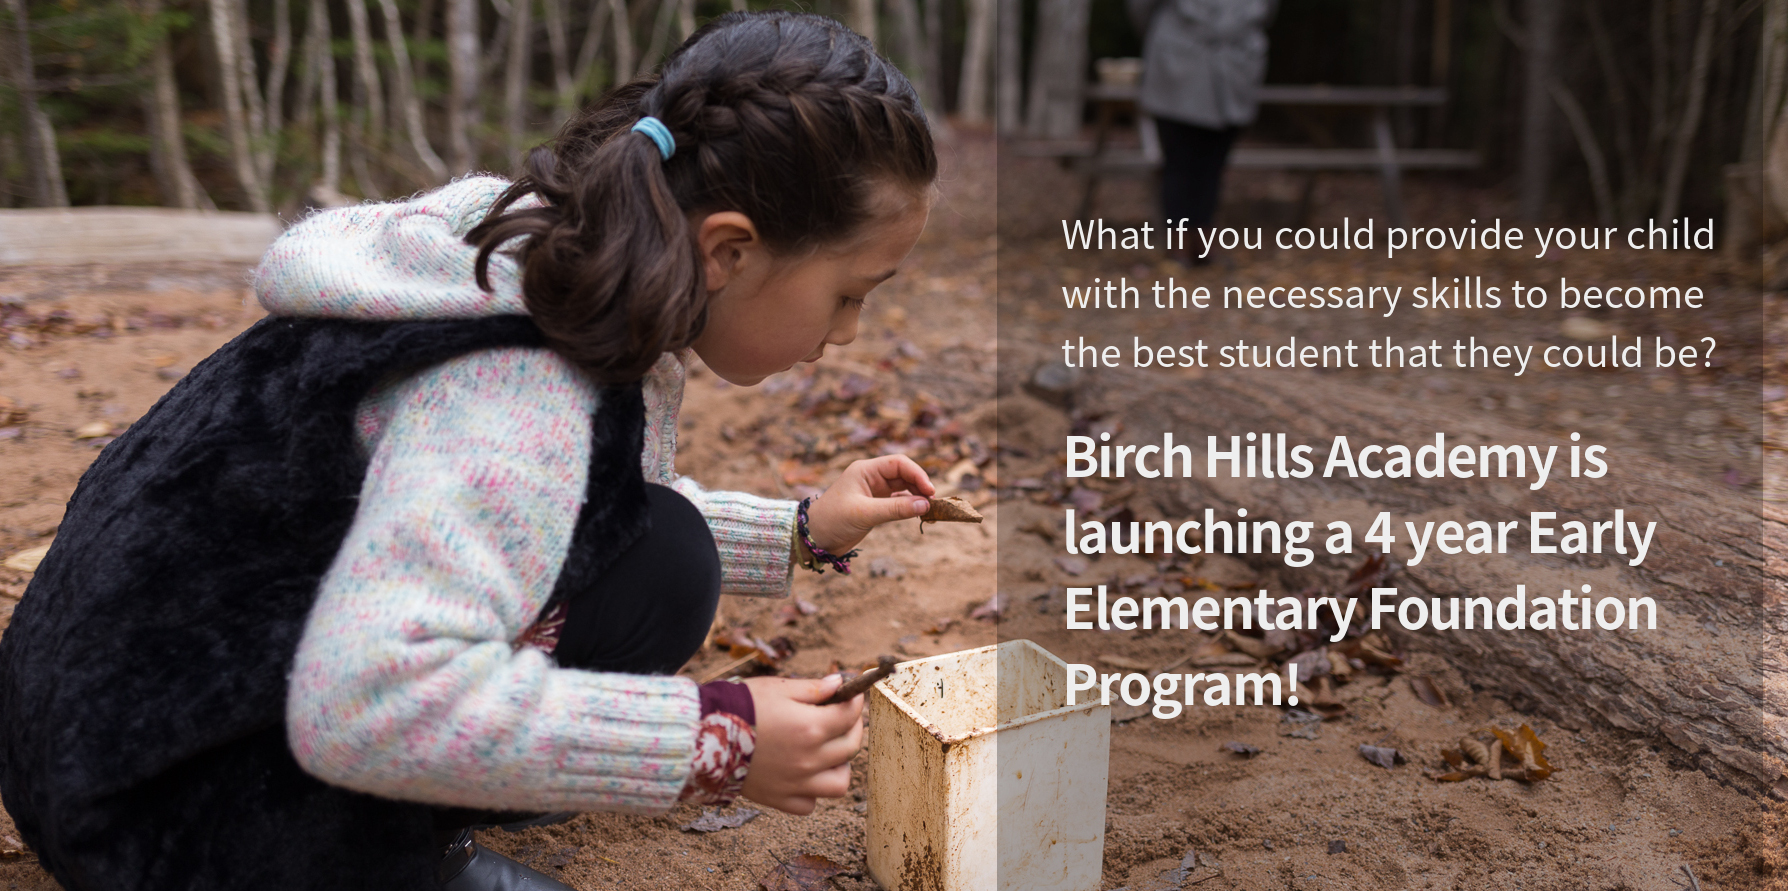 Birch Hills Academy